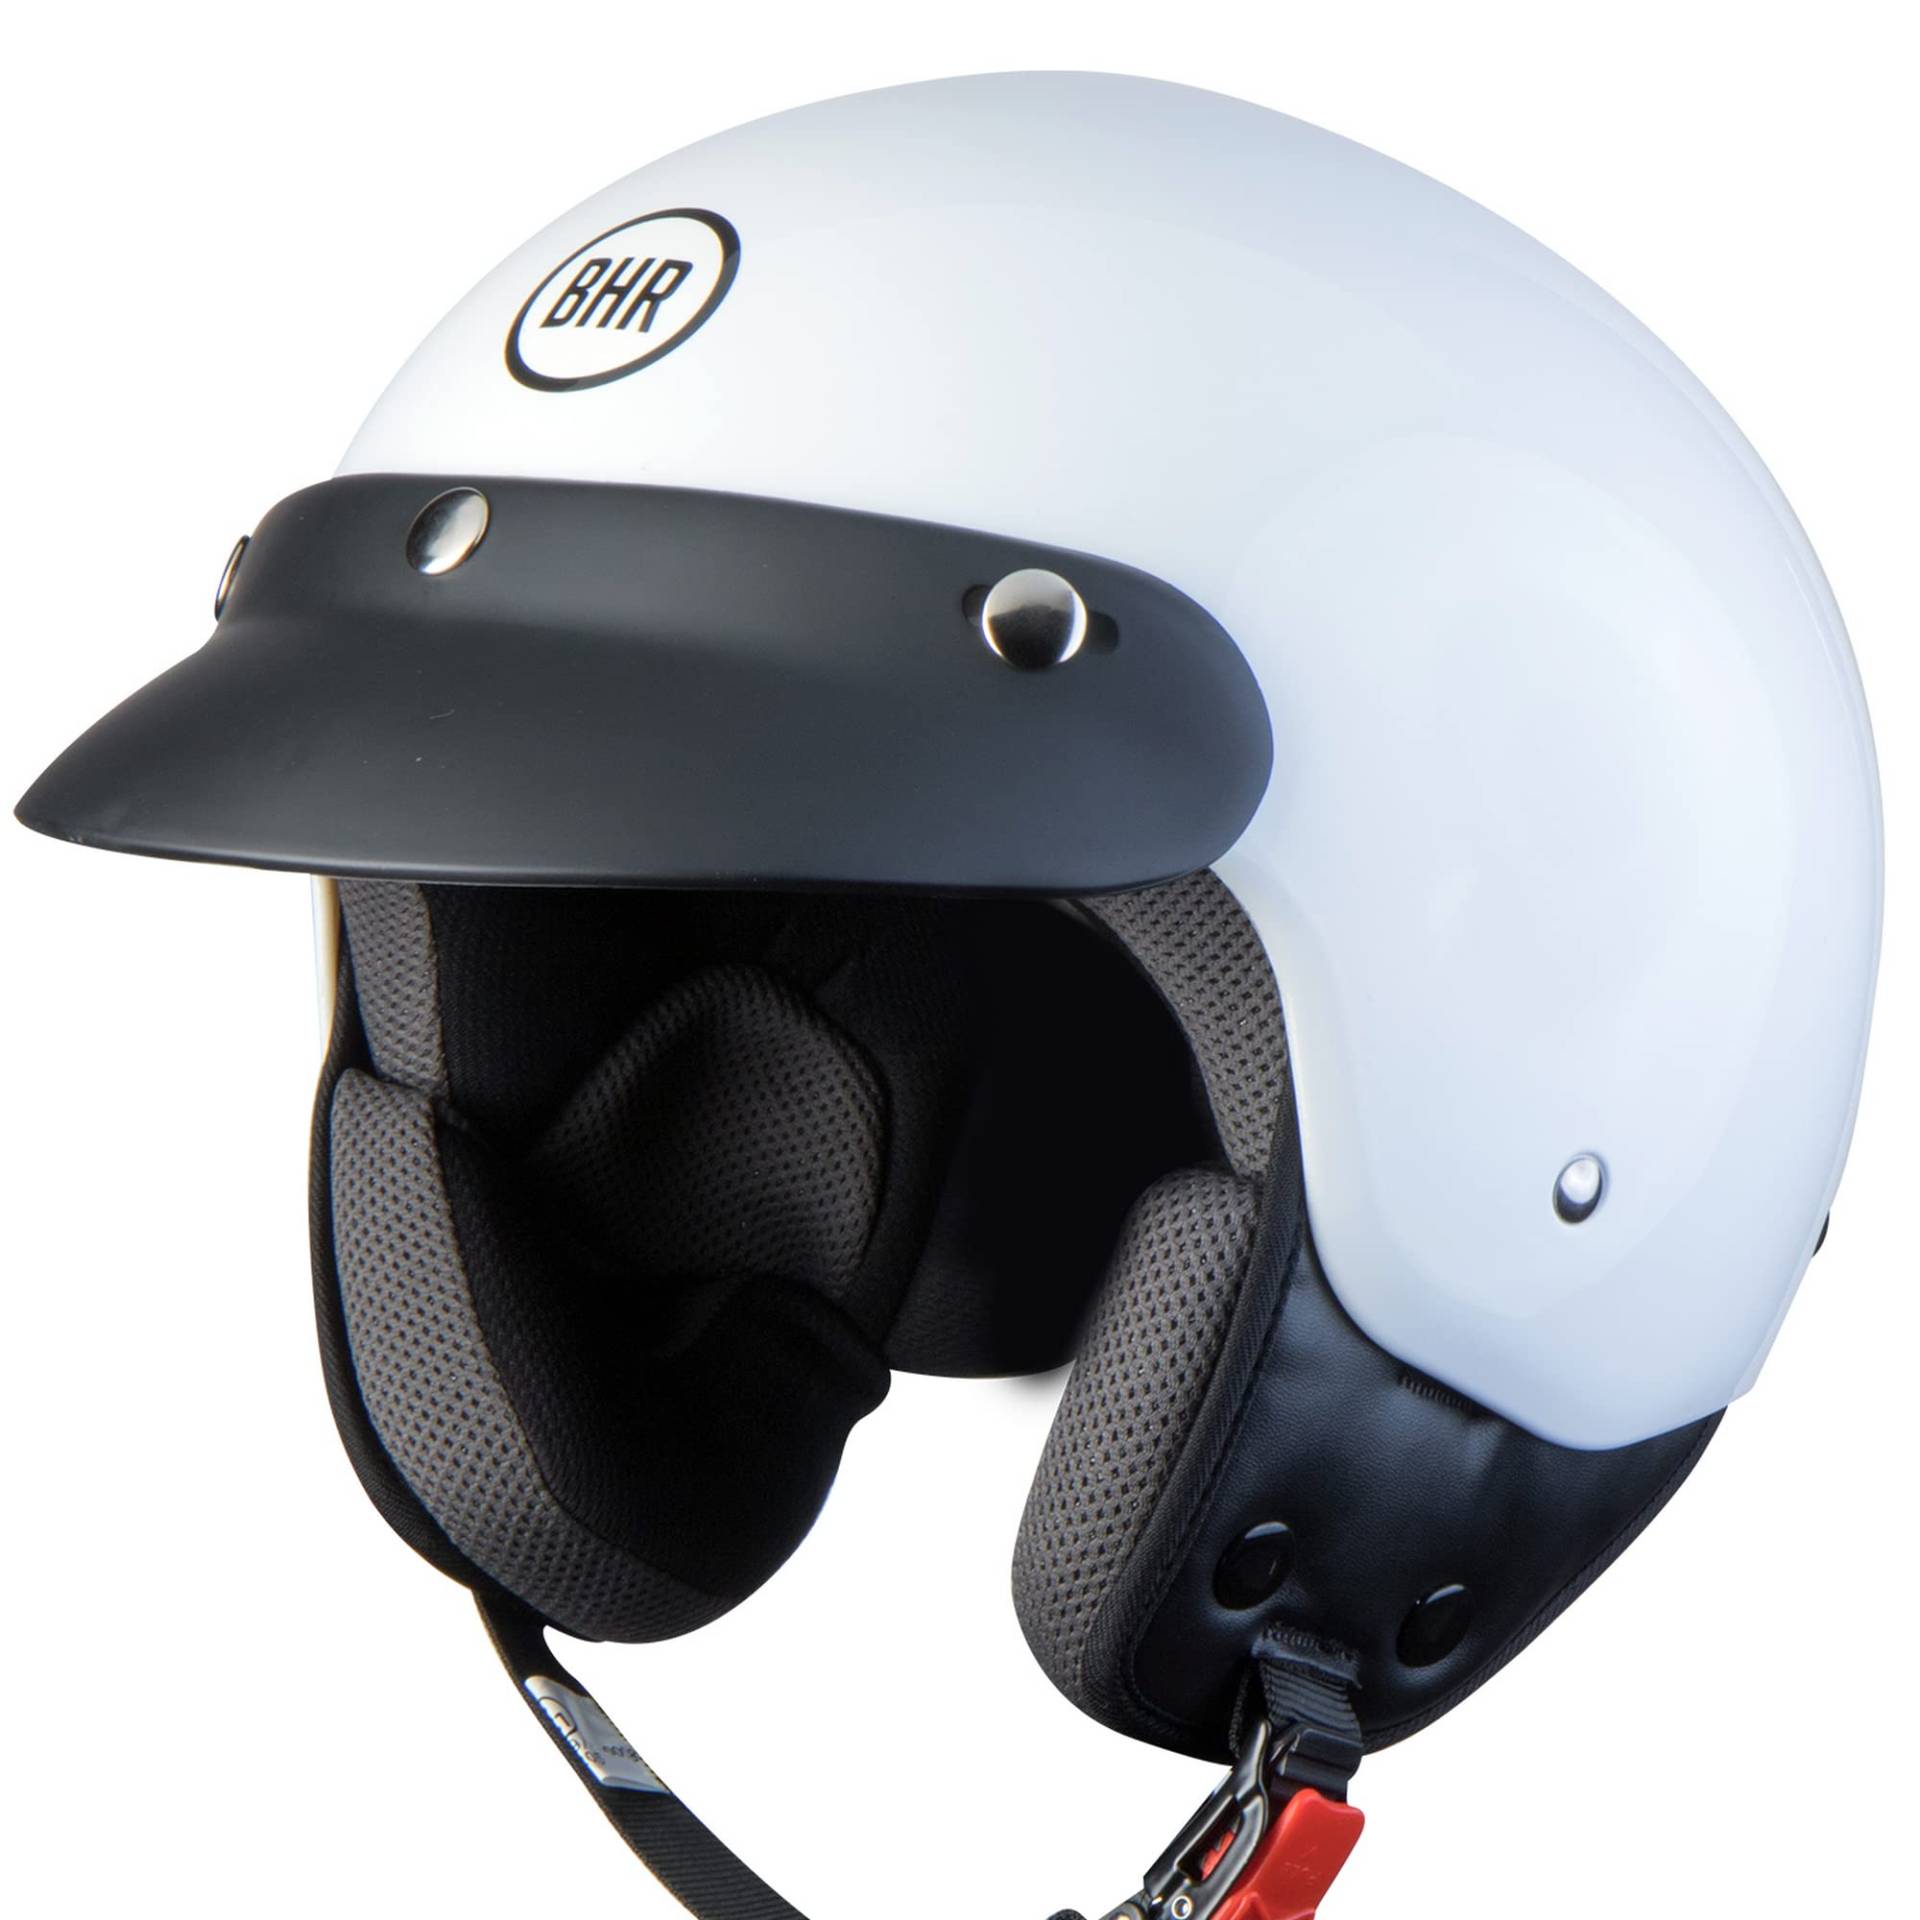 BHR Demi-Jet Helm 803 SIMPLY, Praktischer Rollerhelm mit ECE-Zulassung, Motorrad-Jet-Helm mit abnehmbarem Gesichtspolster, WEISS, M von BHR